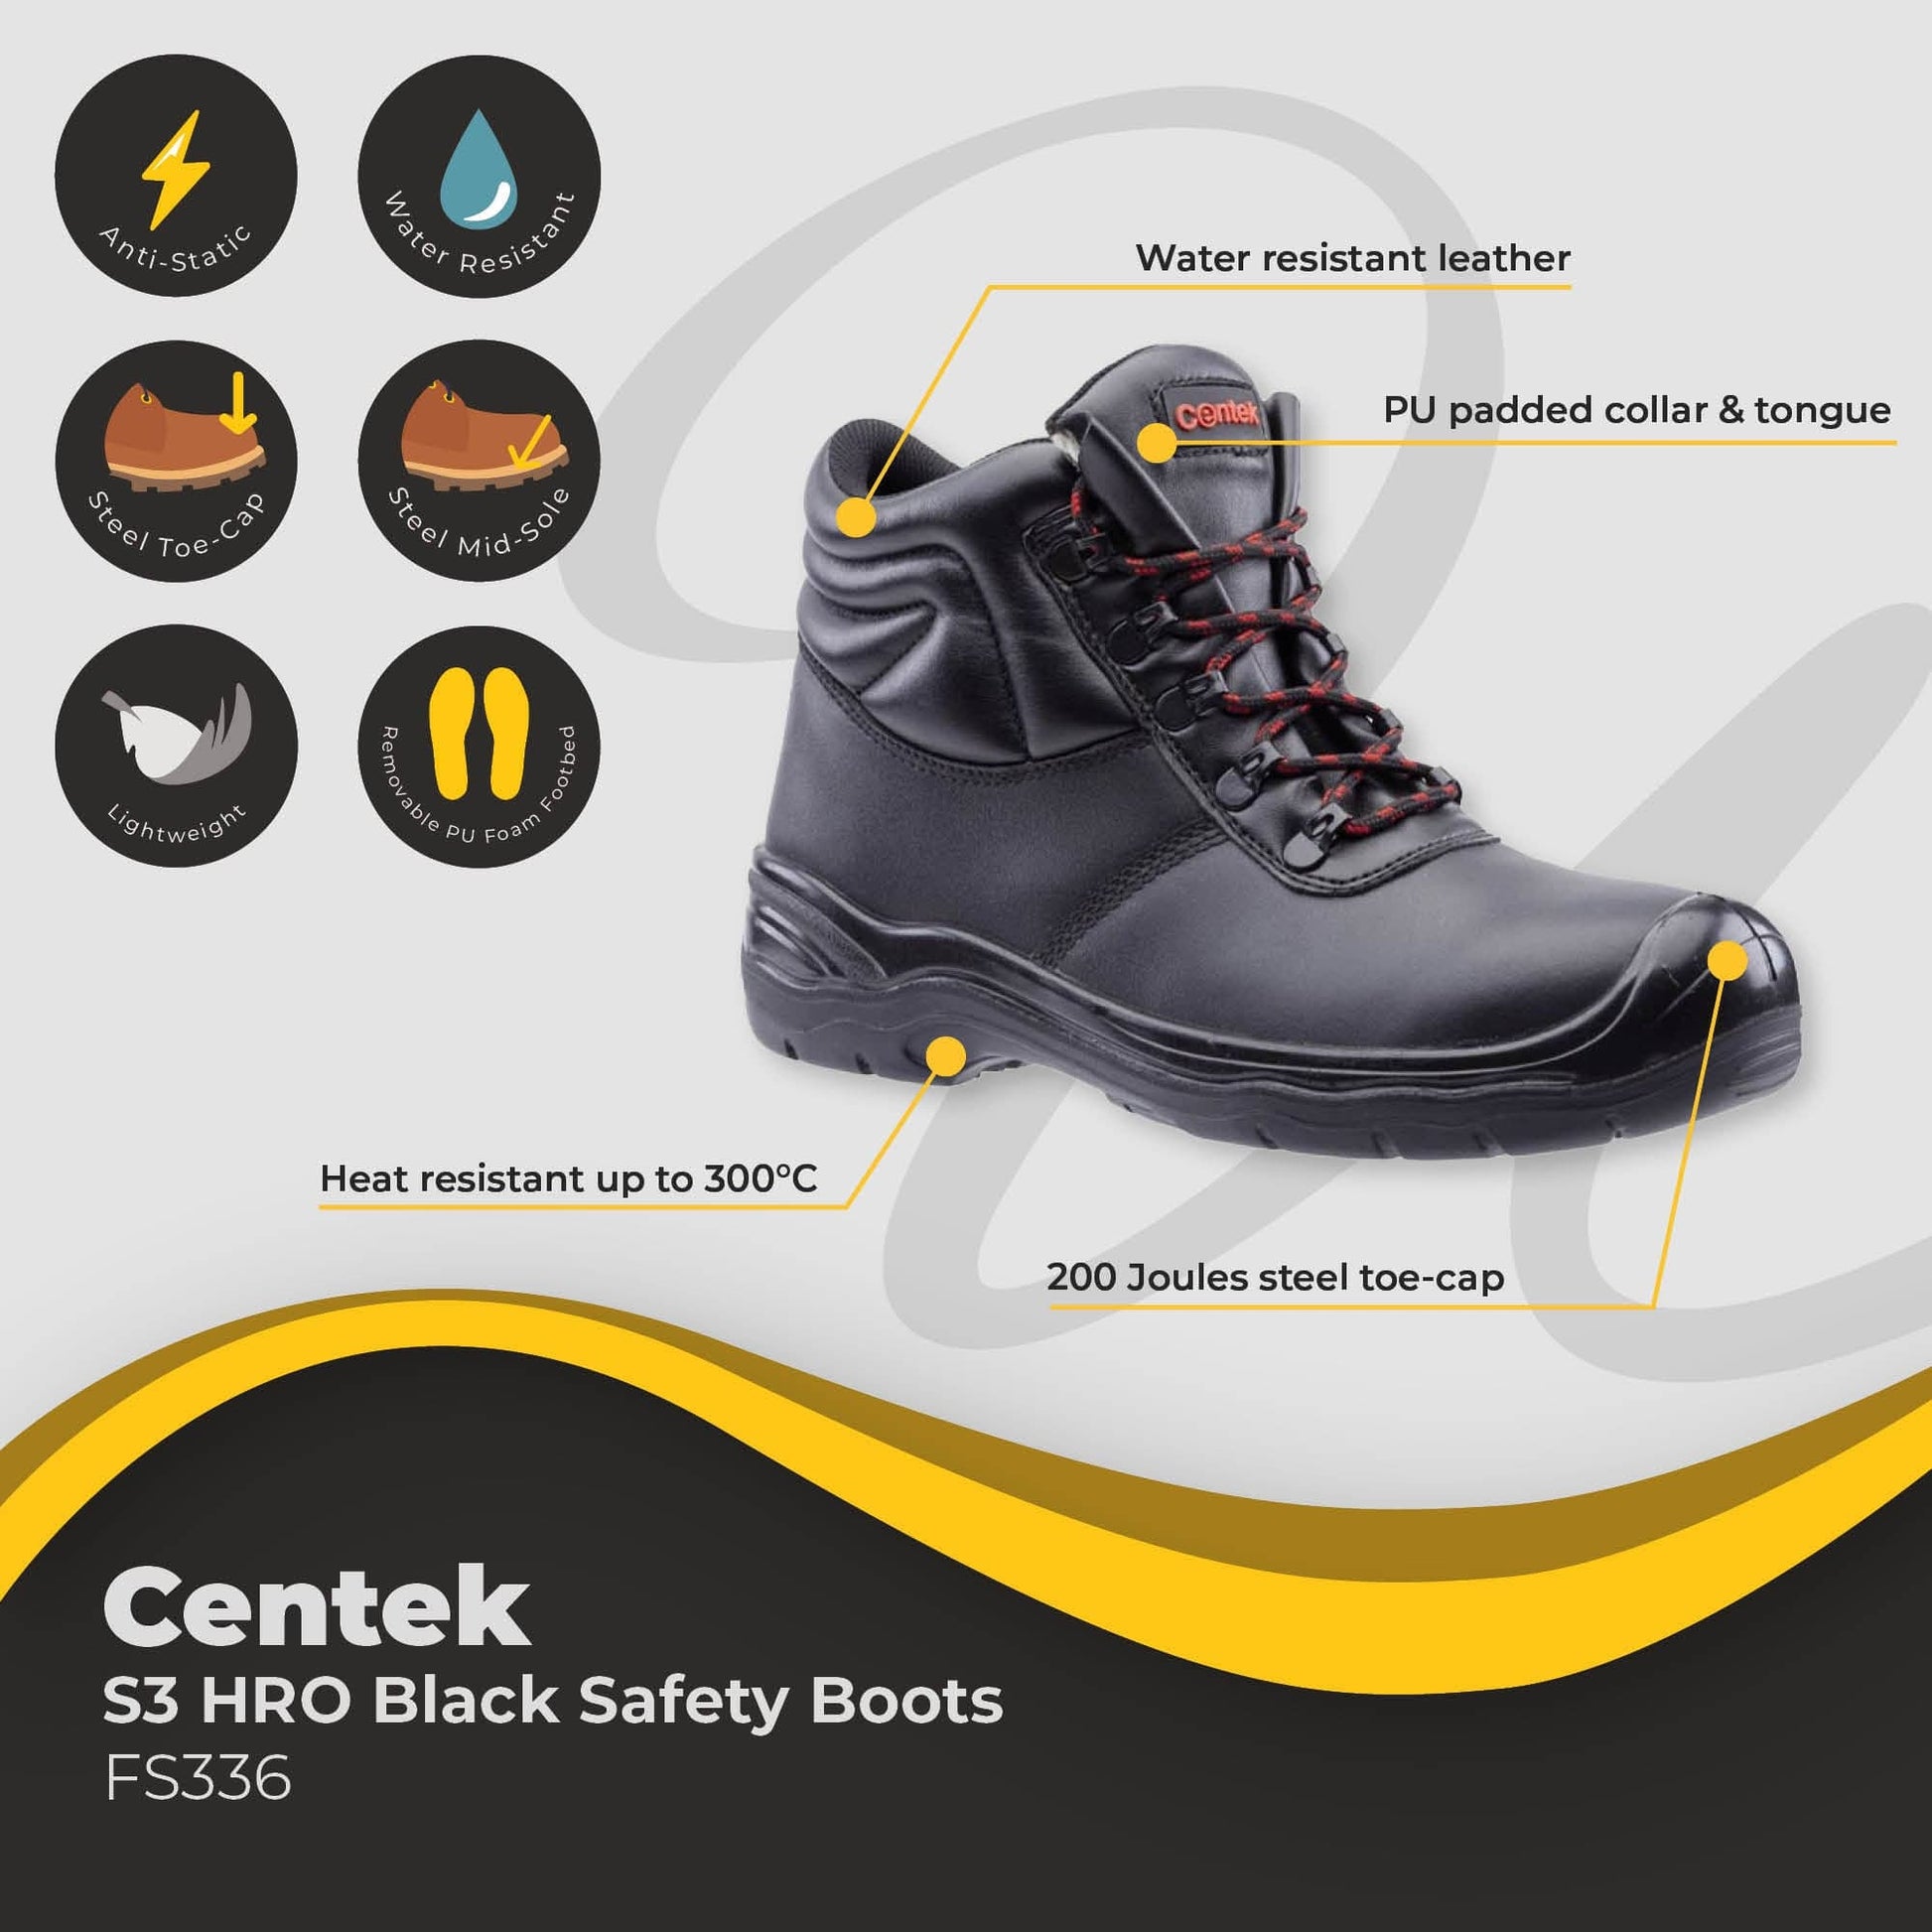 centek blacks3 hro safety boot fs336